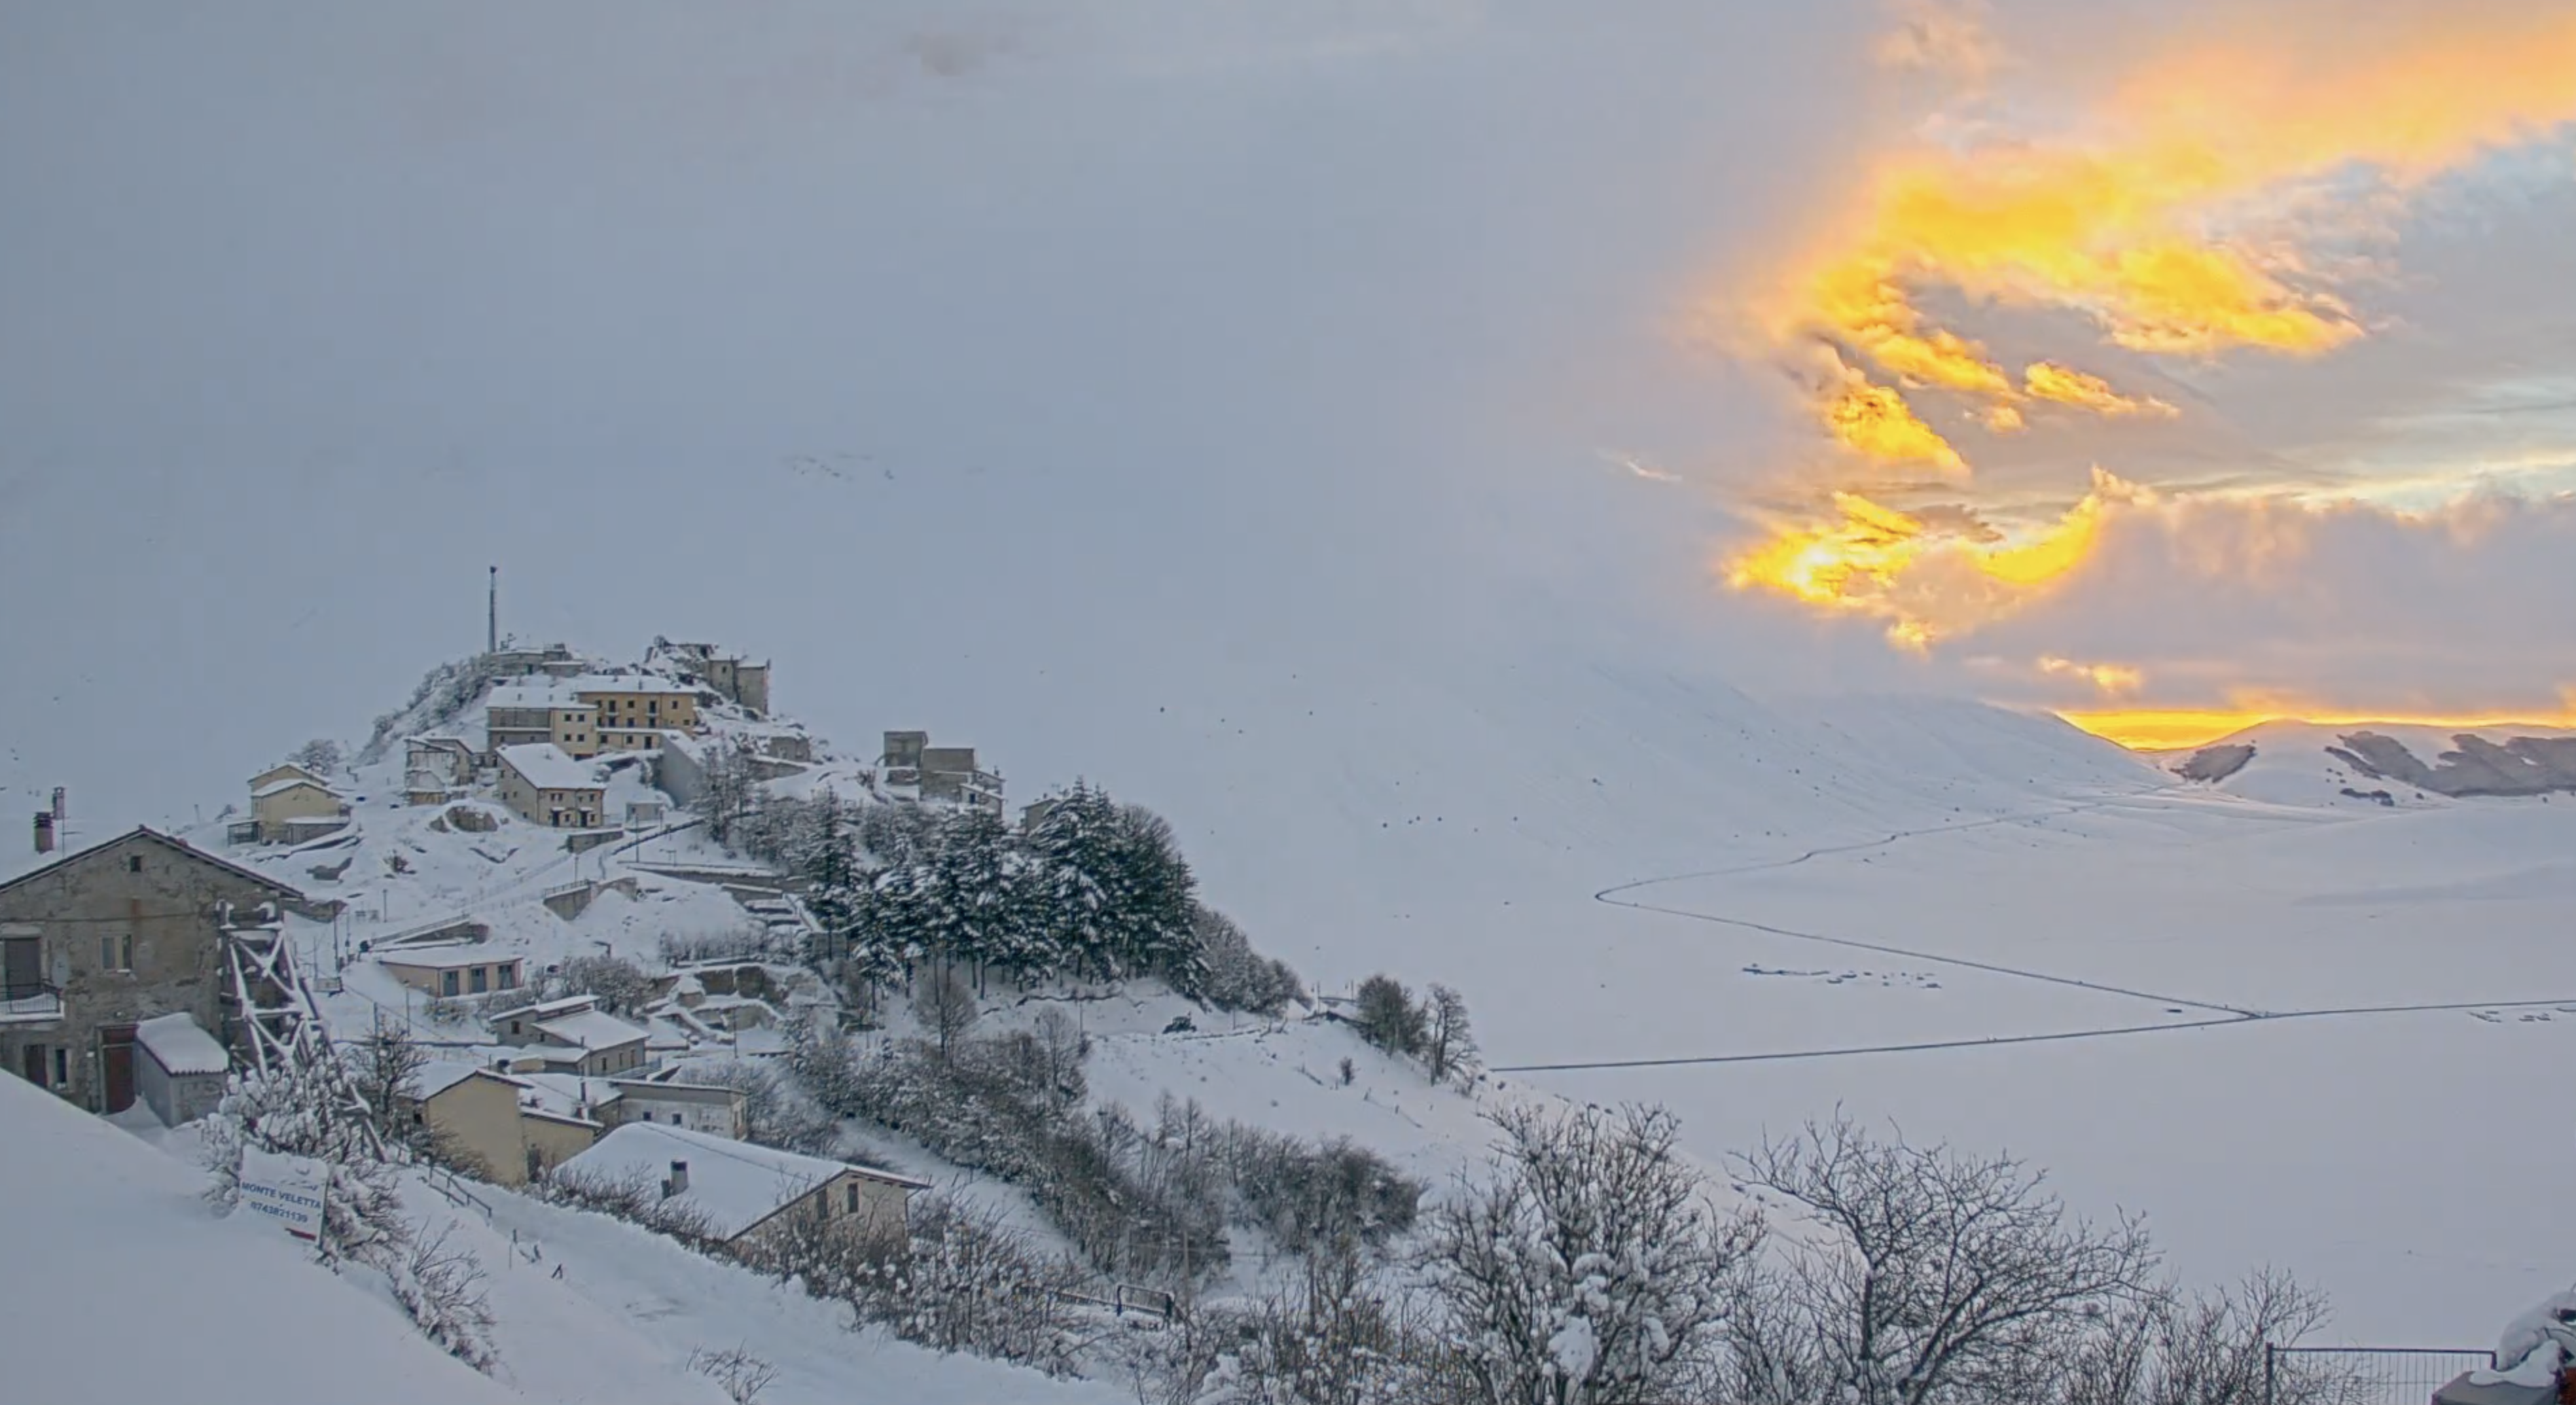 Benvenuto 2021, la neve e un&#39;alba spettacolare: da Castelluccio di Norcia cartolina da brividi per salutare il nuovo anno – Corriere dell&#39;Umbria